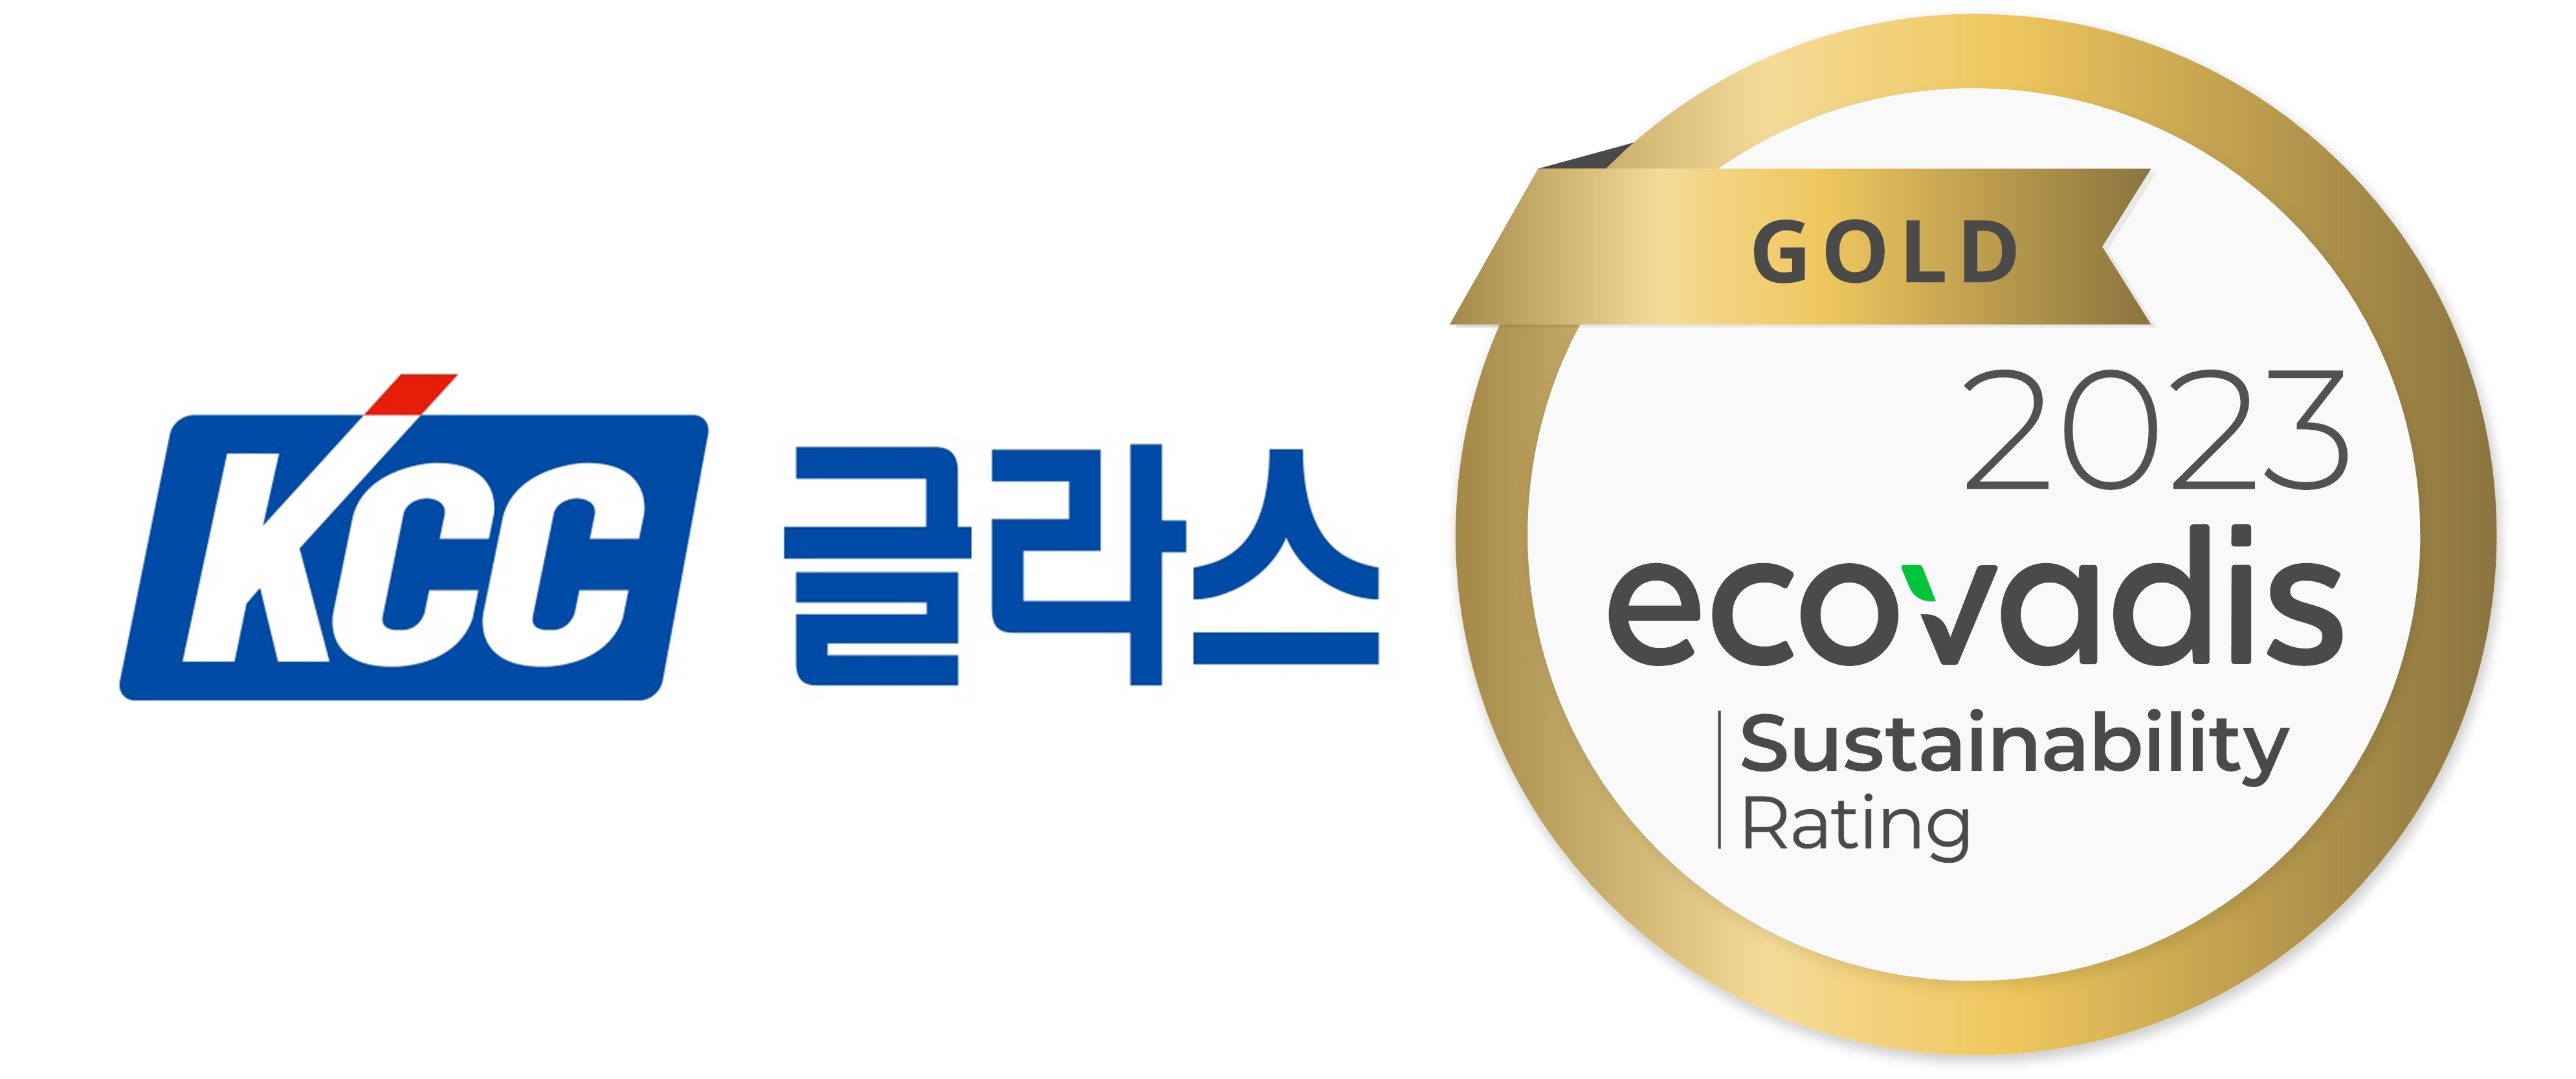 KCC글라스, 에코바디스 ESG 평가 2년 연속 ‘골드 메달’ 획득